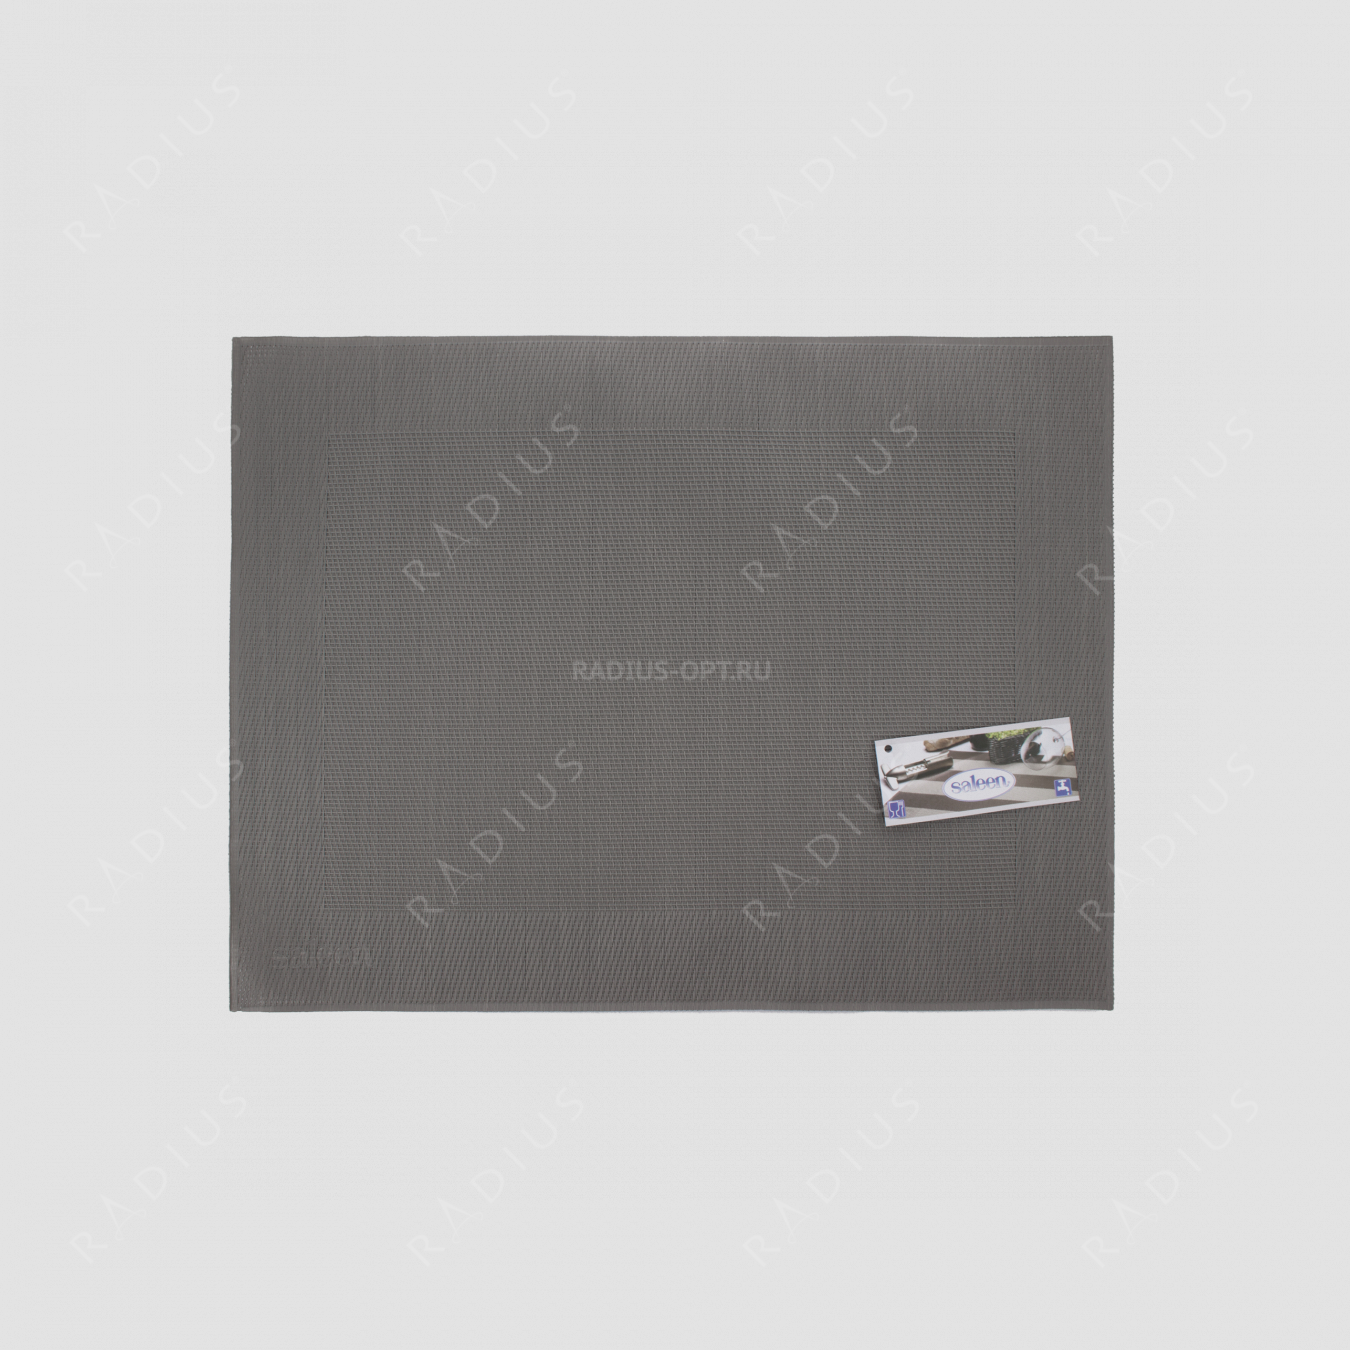 Салфетка подстановочная, 42х32 см, цвет серый, Rahmen, серия Saleen, Westmark, Германия